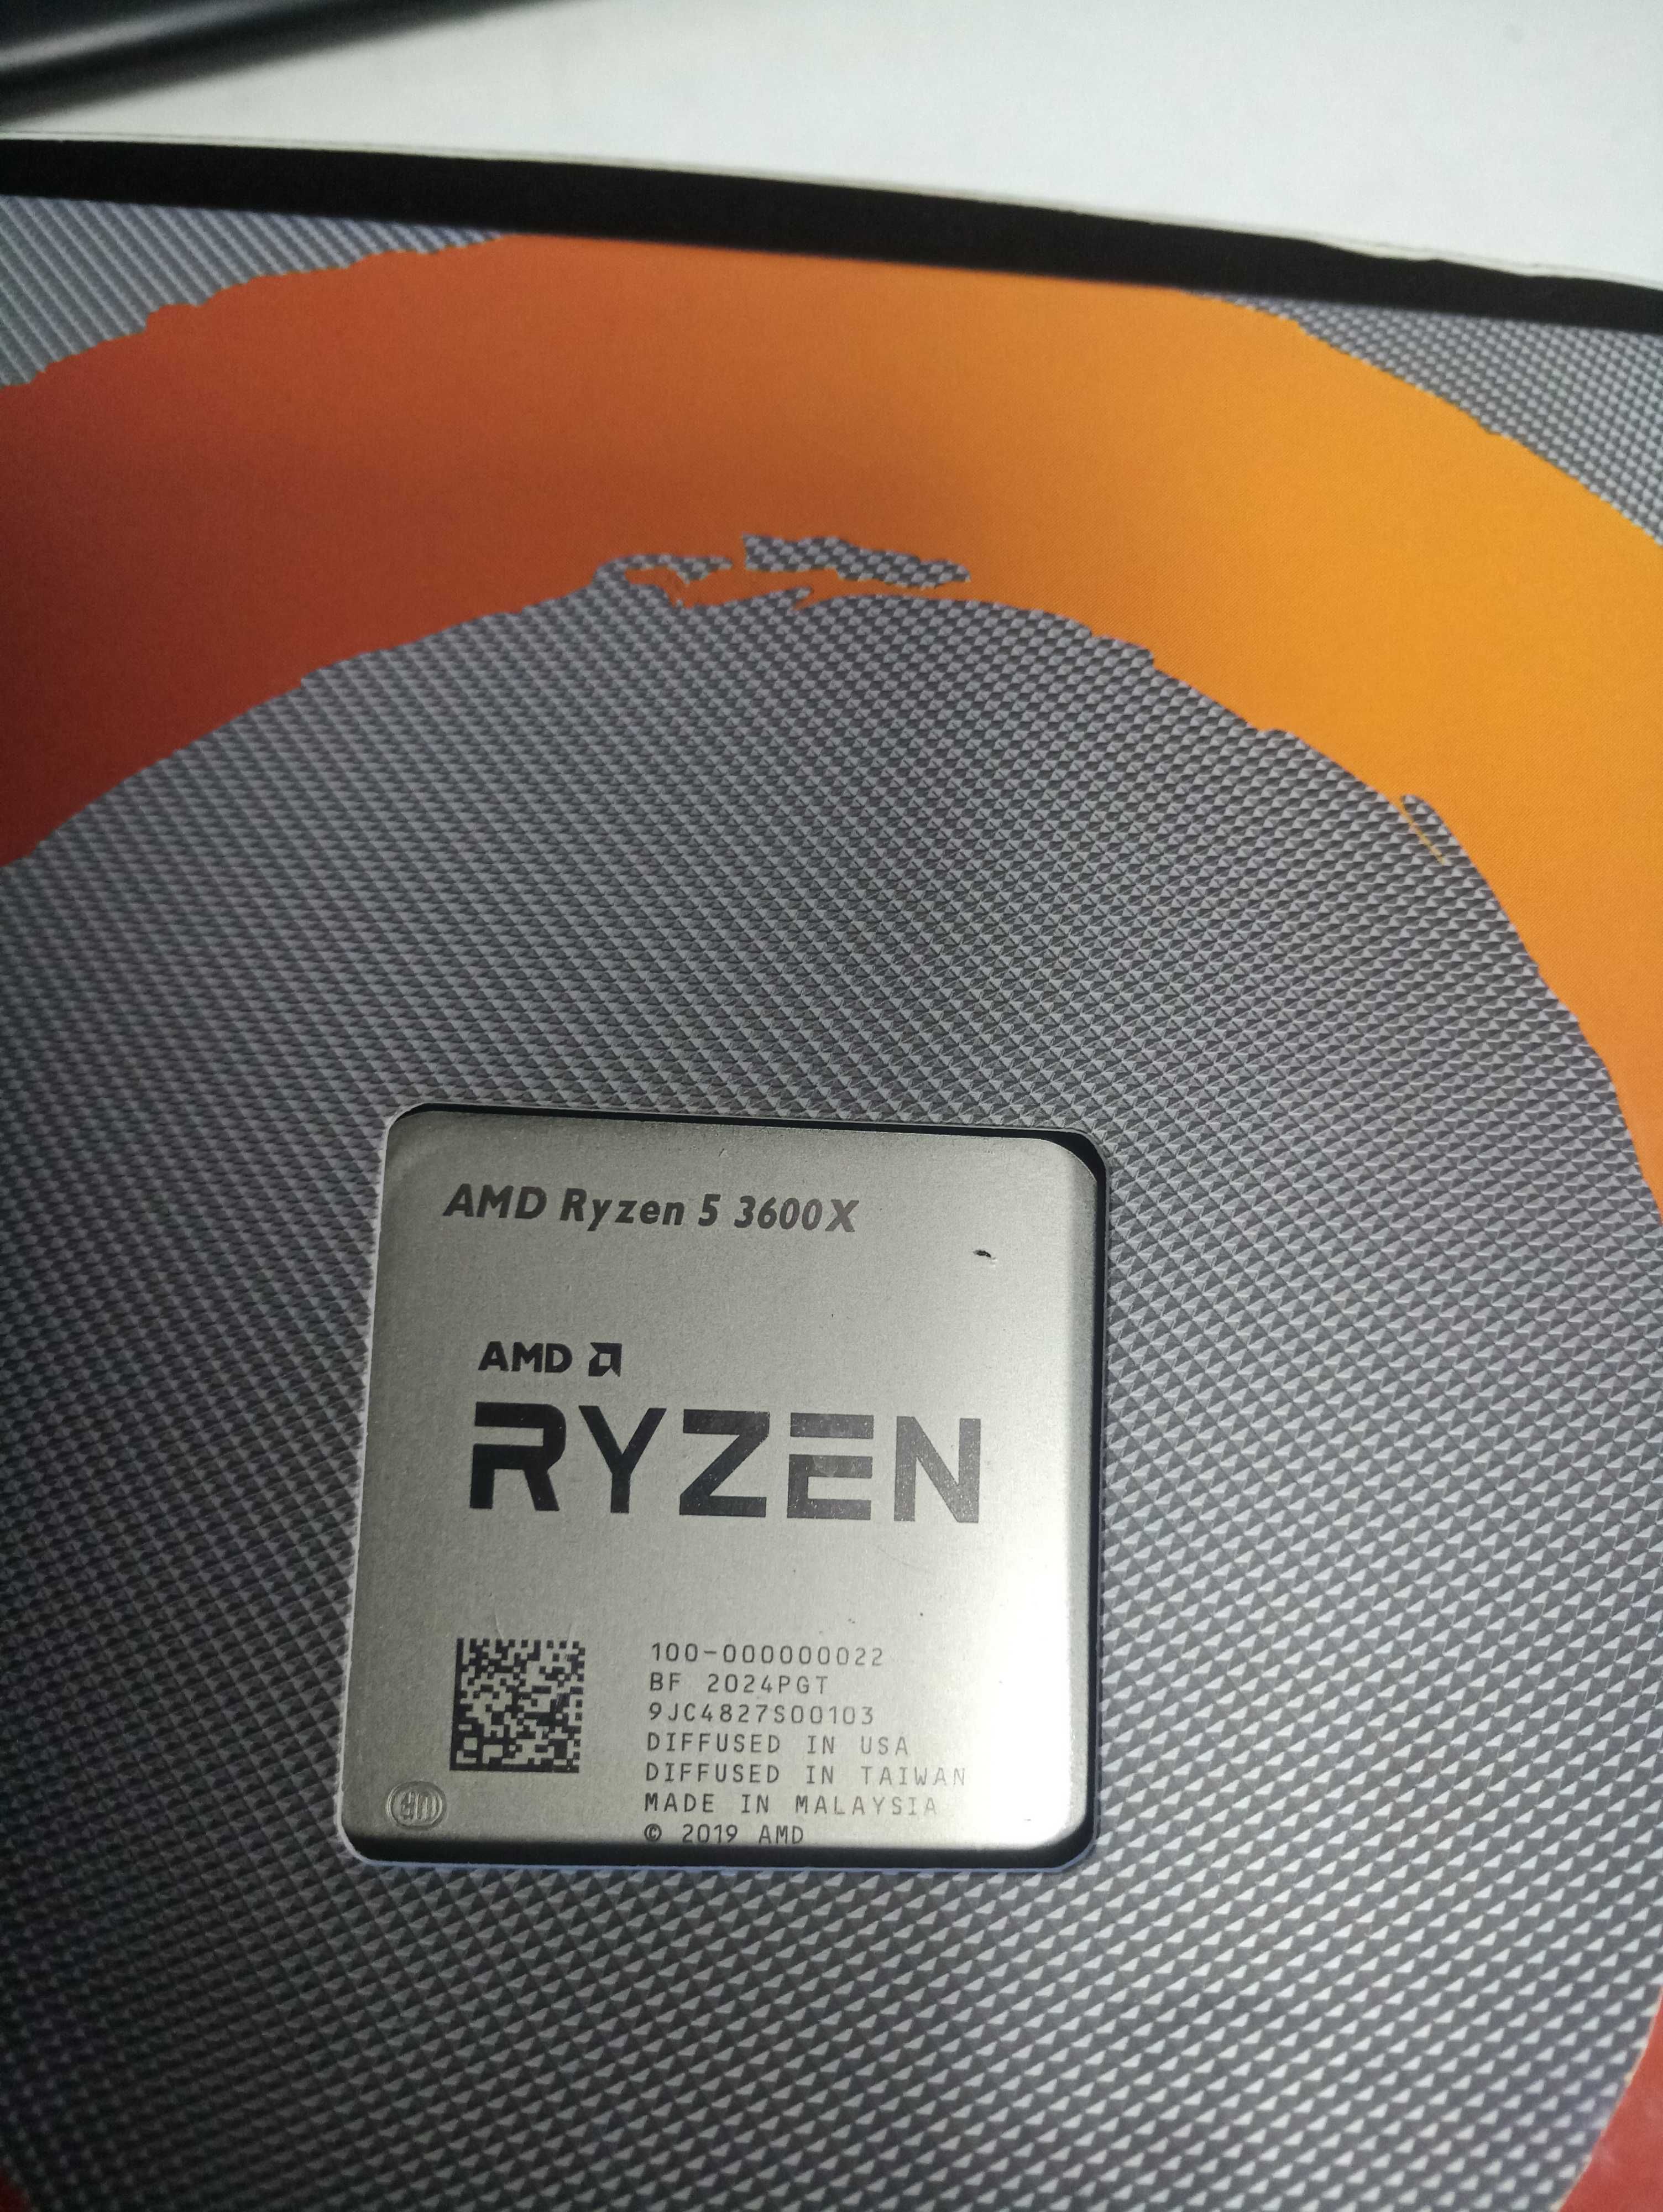 AMD Ryzen 5 3600X + ASRock B450 Steel Legend